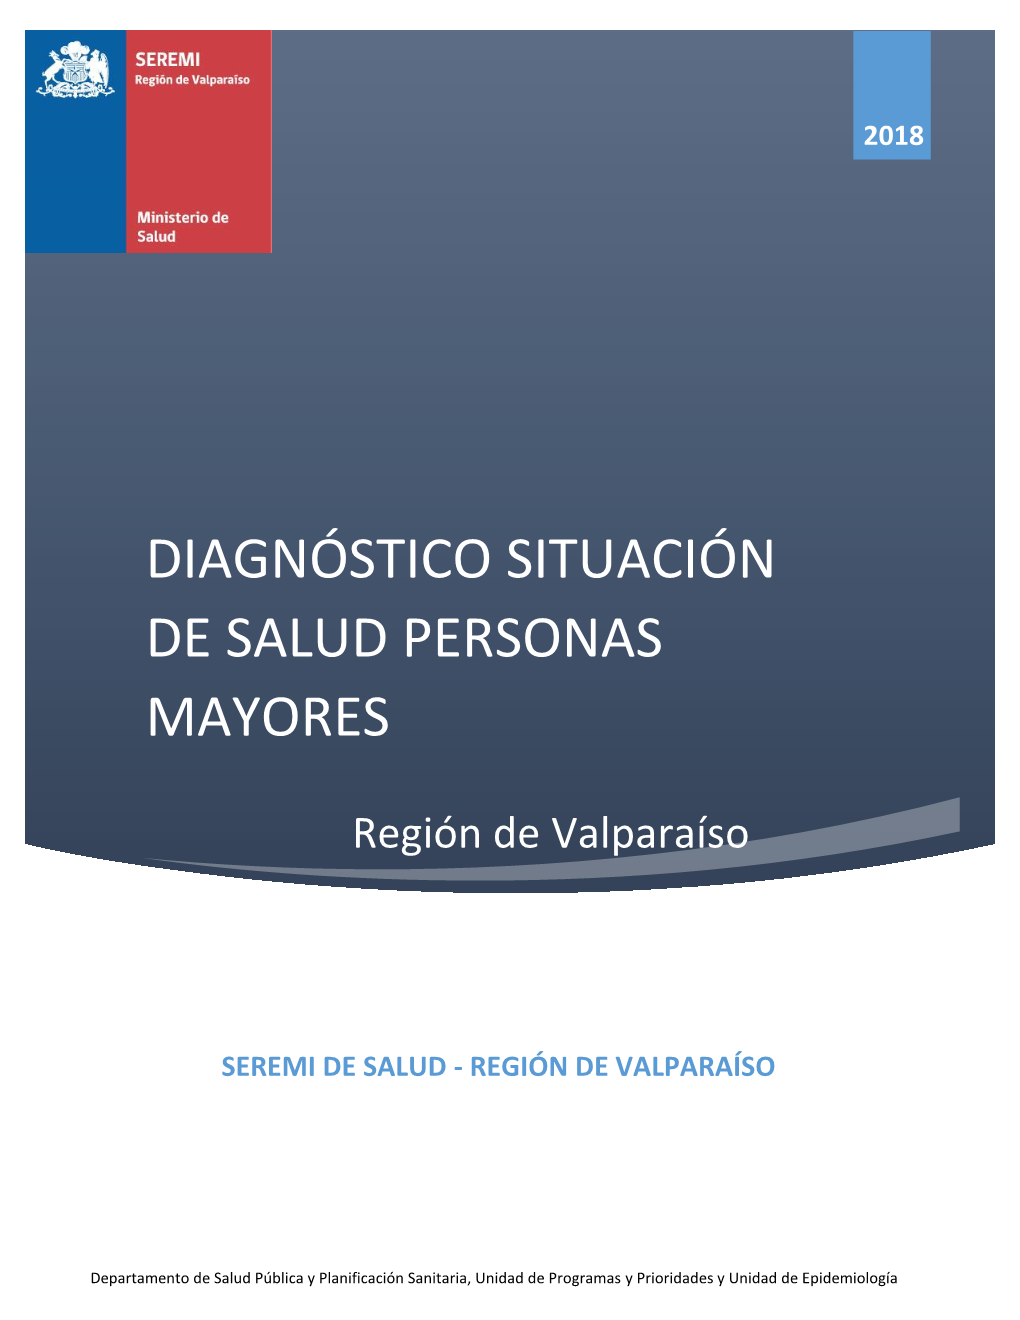 Diagnóstico Situación De Salud Personas Mayores